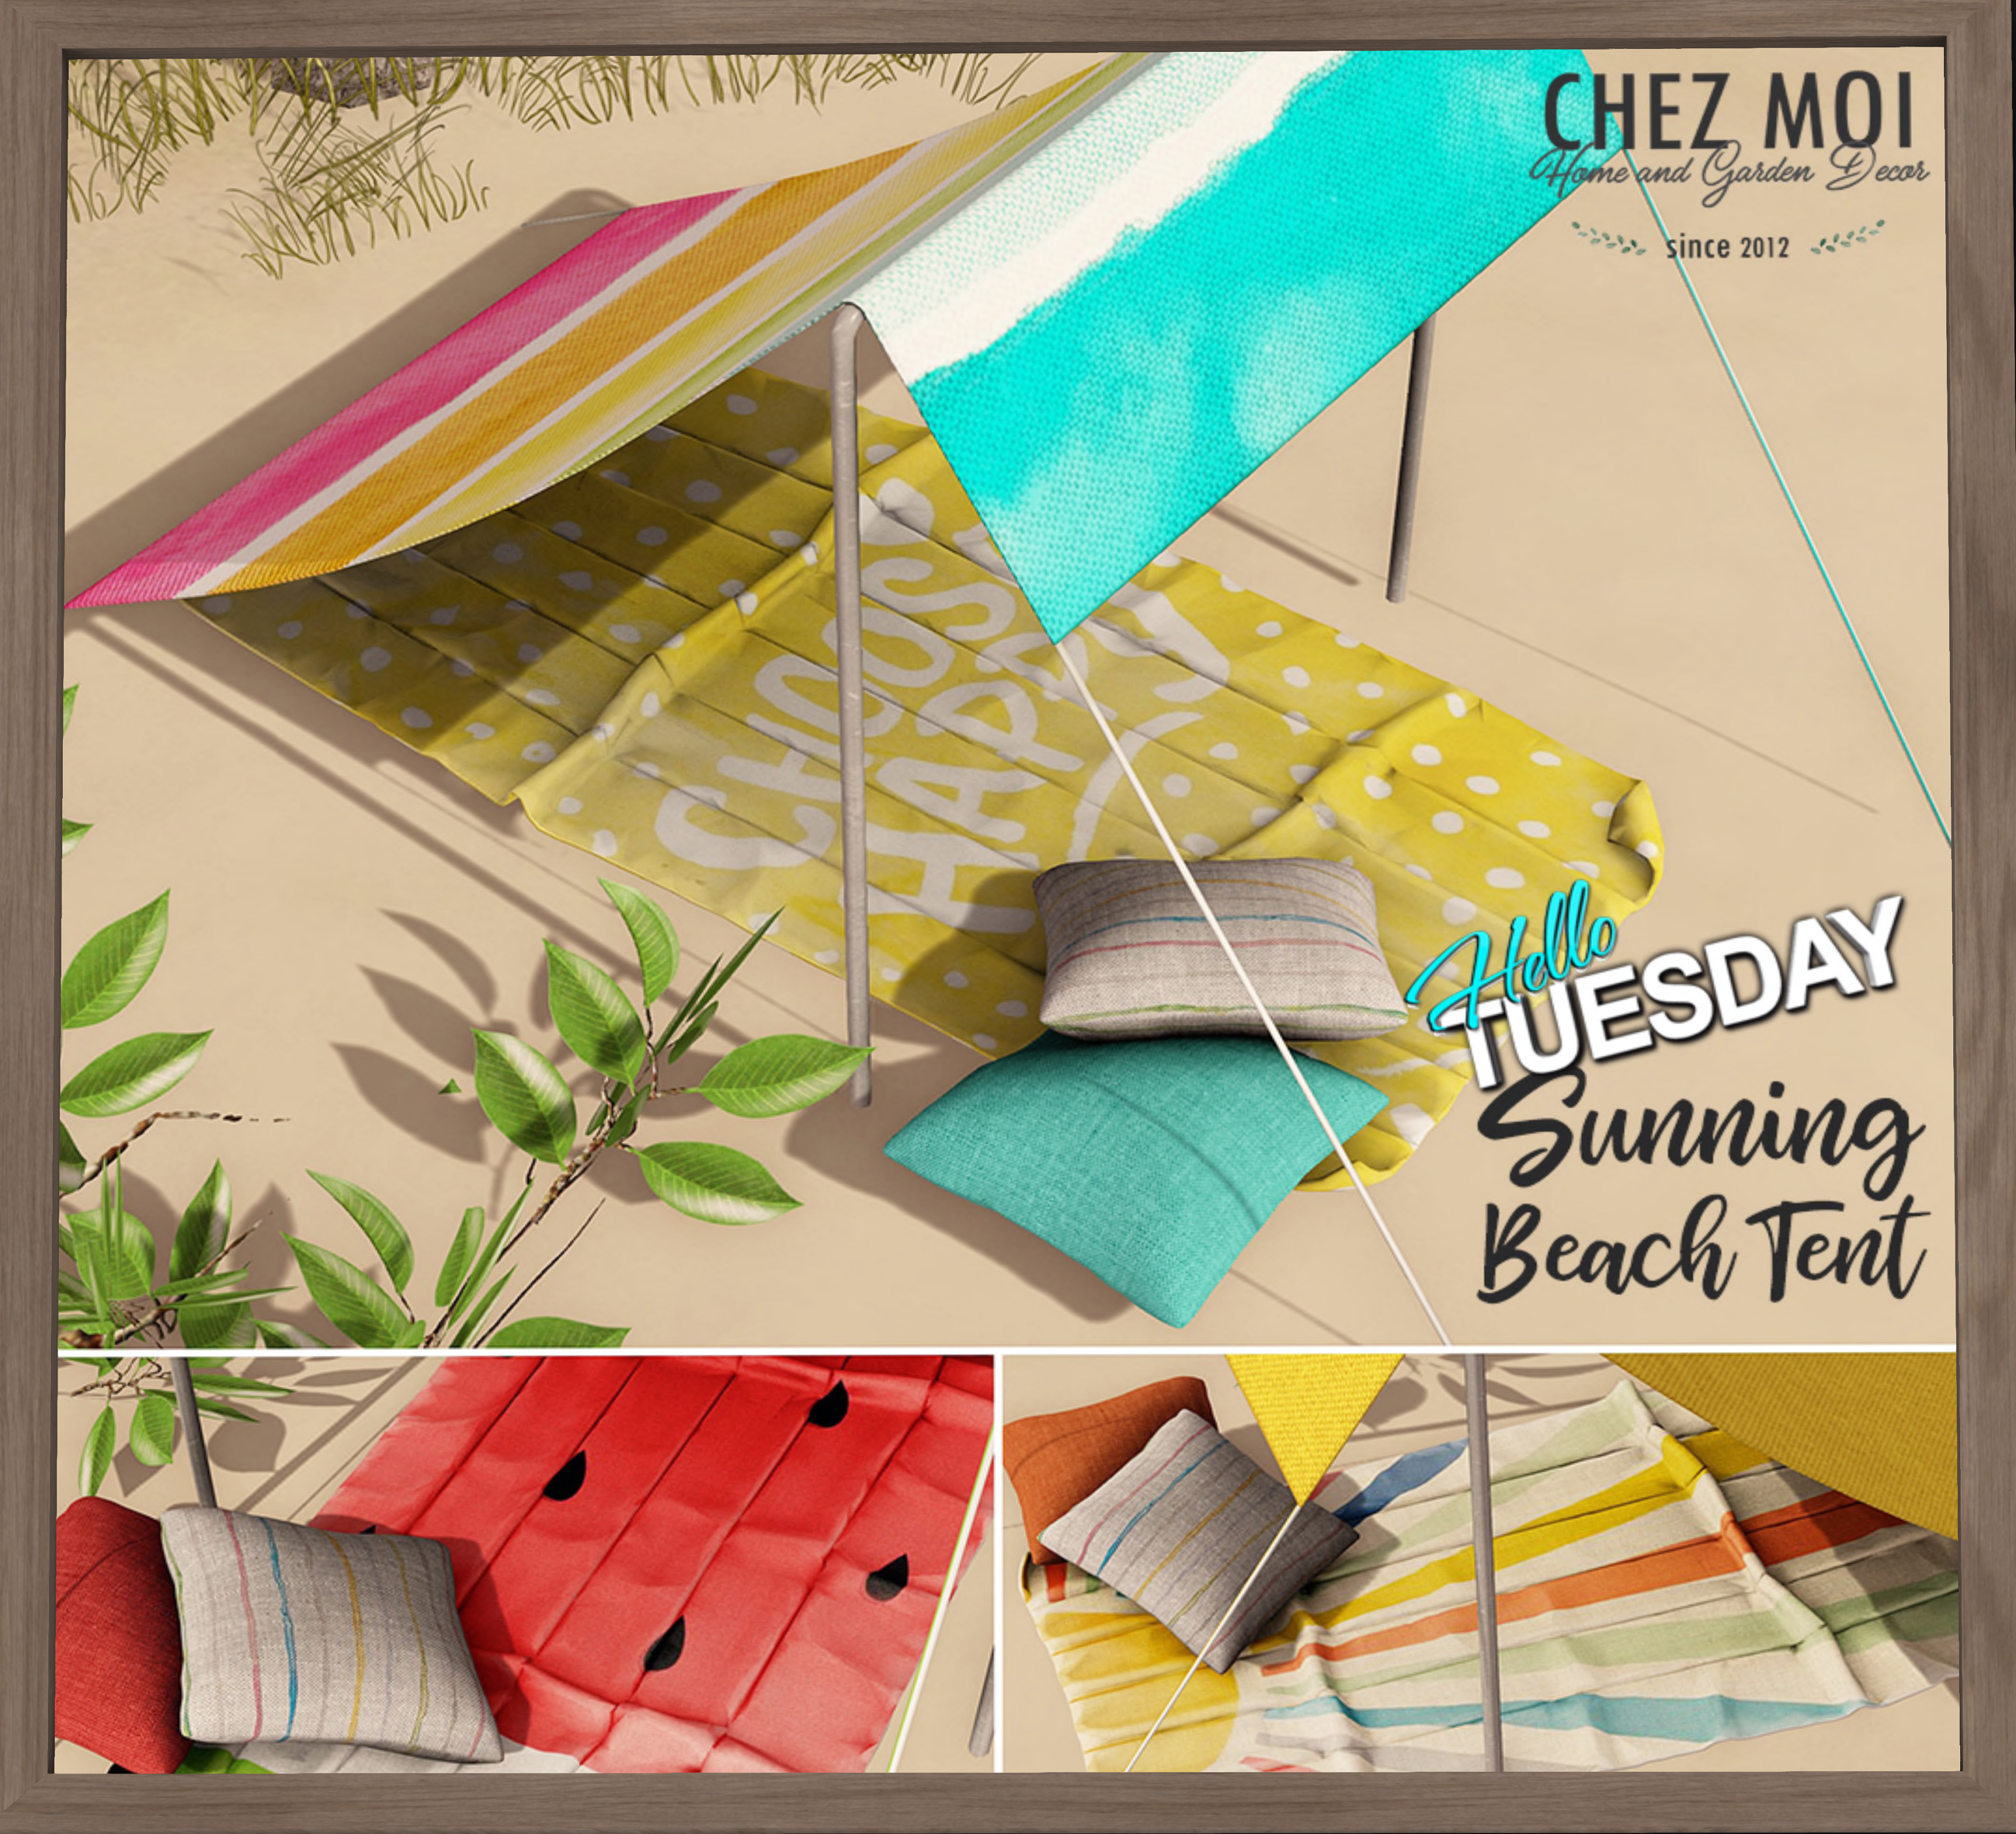 Chez Moi – Sunning Beach Tent